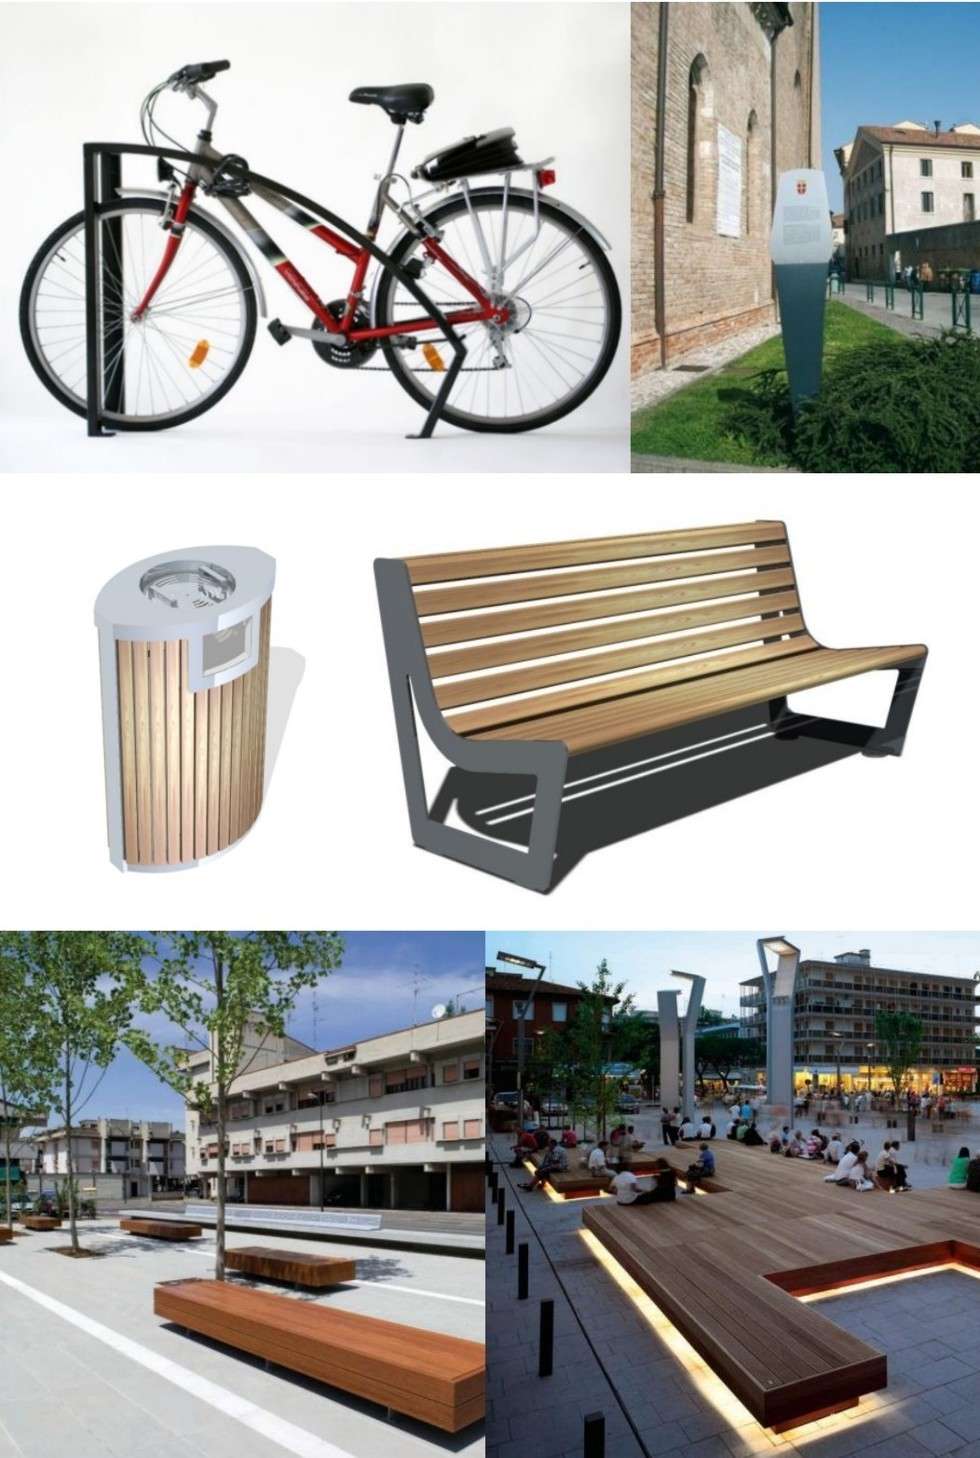  
Przewidziane są również stojaki dla rowerów, które staną wzdłuż nowego odcinka deptaka. Wysokiej jakości mają być też inne elementy małej architektury.
